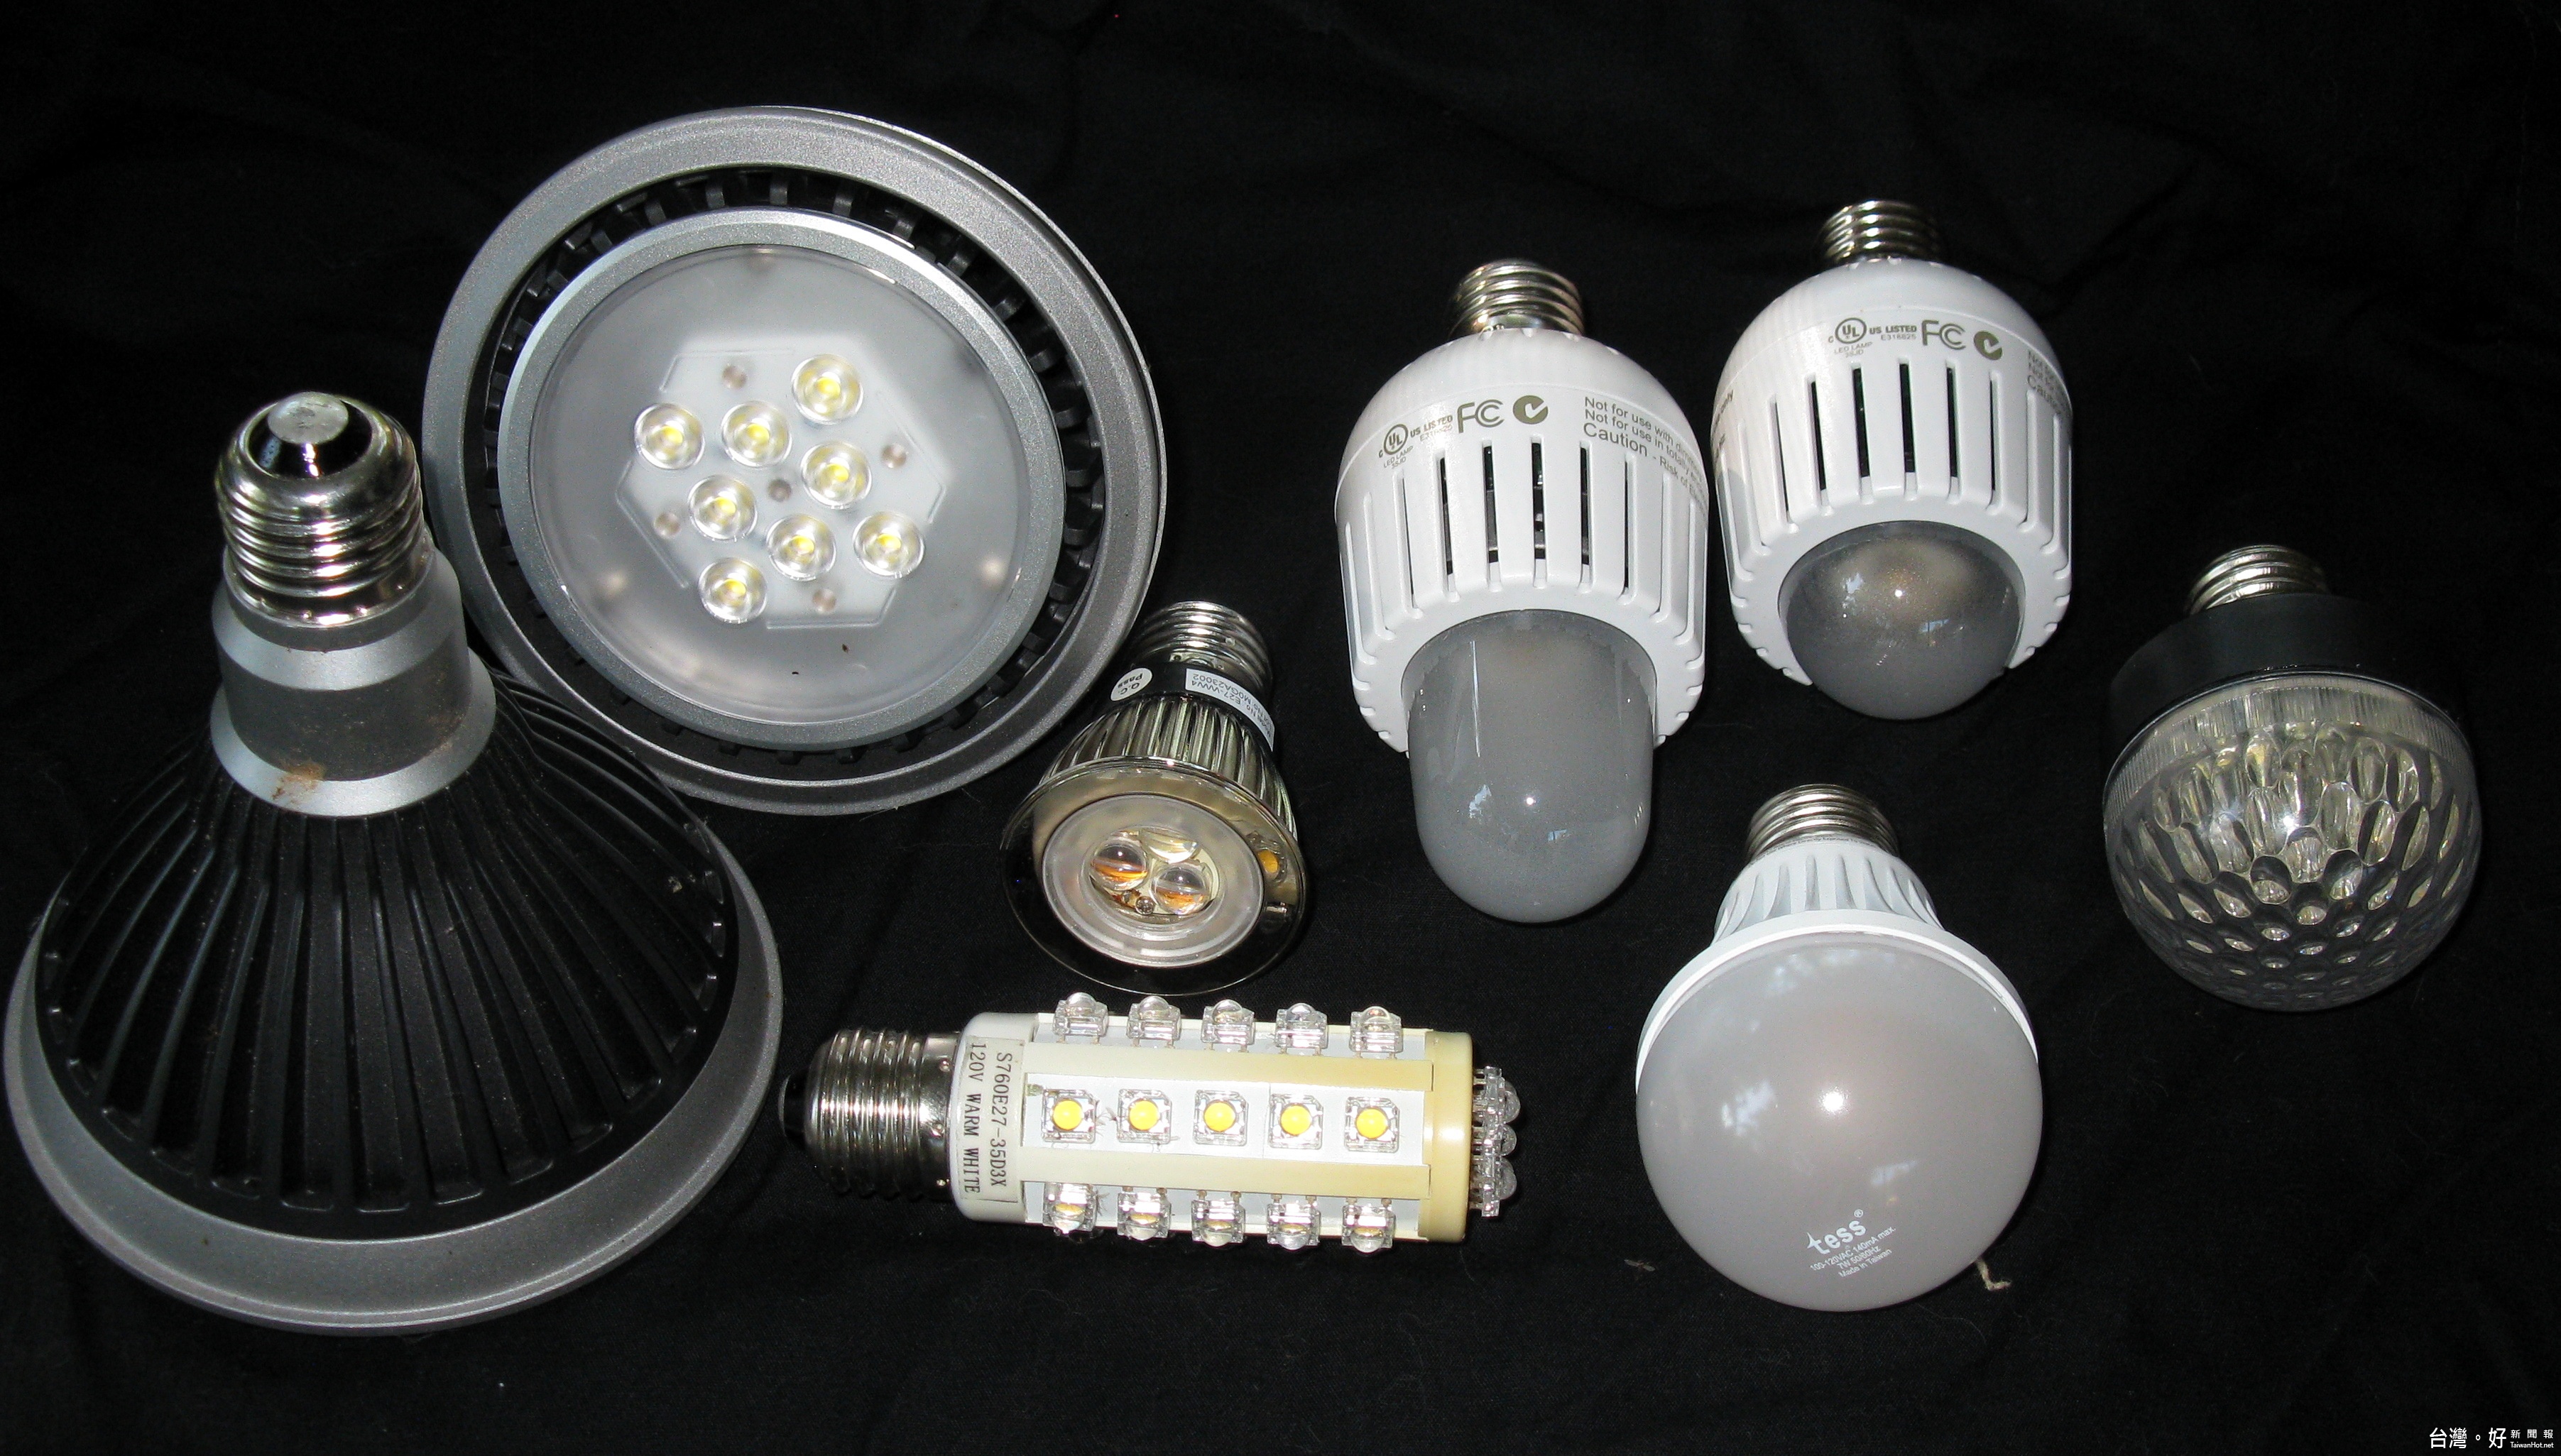 北市回收廢棄LED燈泡、燈管、鈕扣型電池　1/1起跑